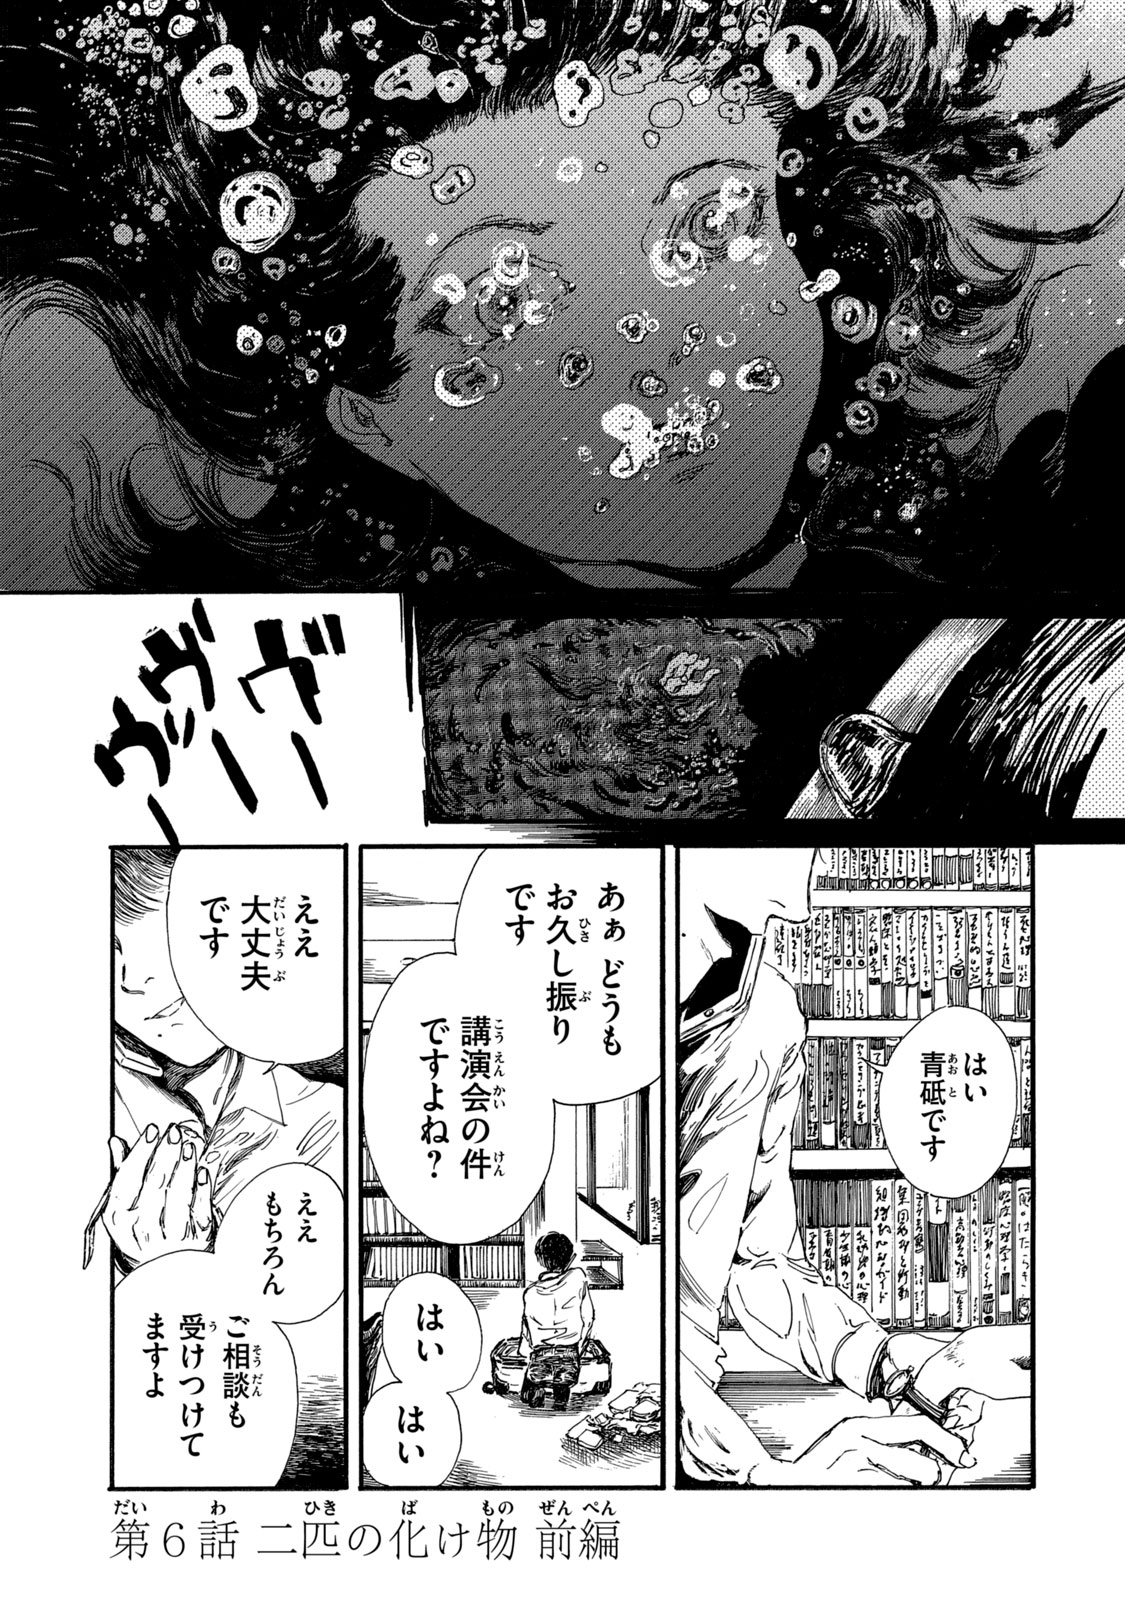 Watashi no Hara no Naka no Bakemono - Chapter 14 - Page 1